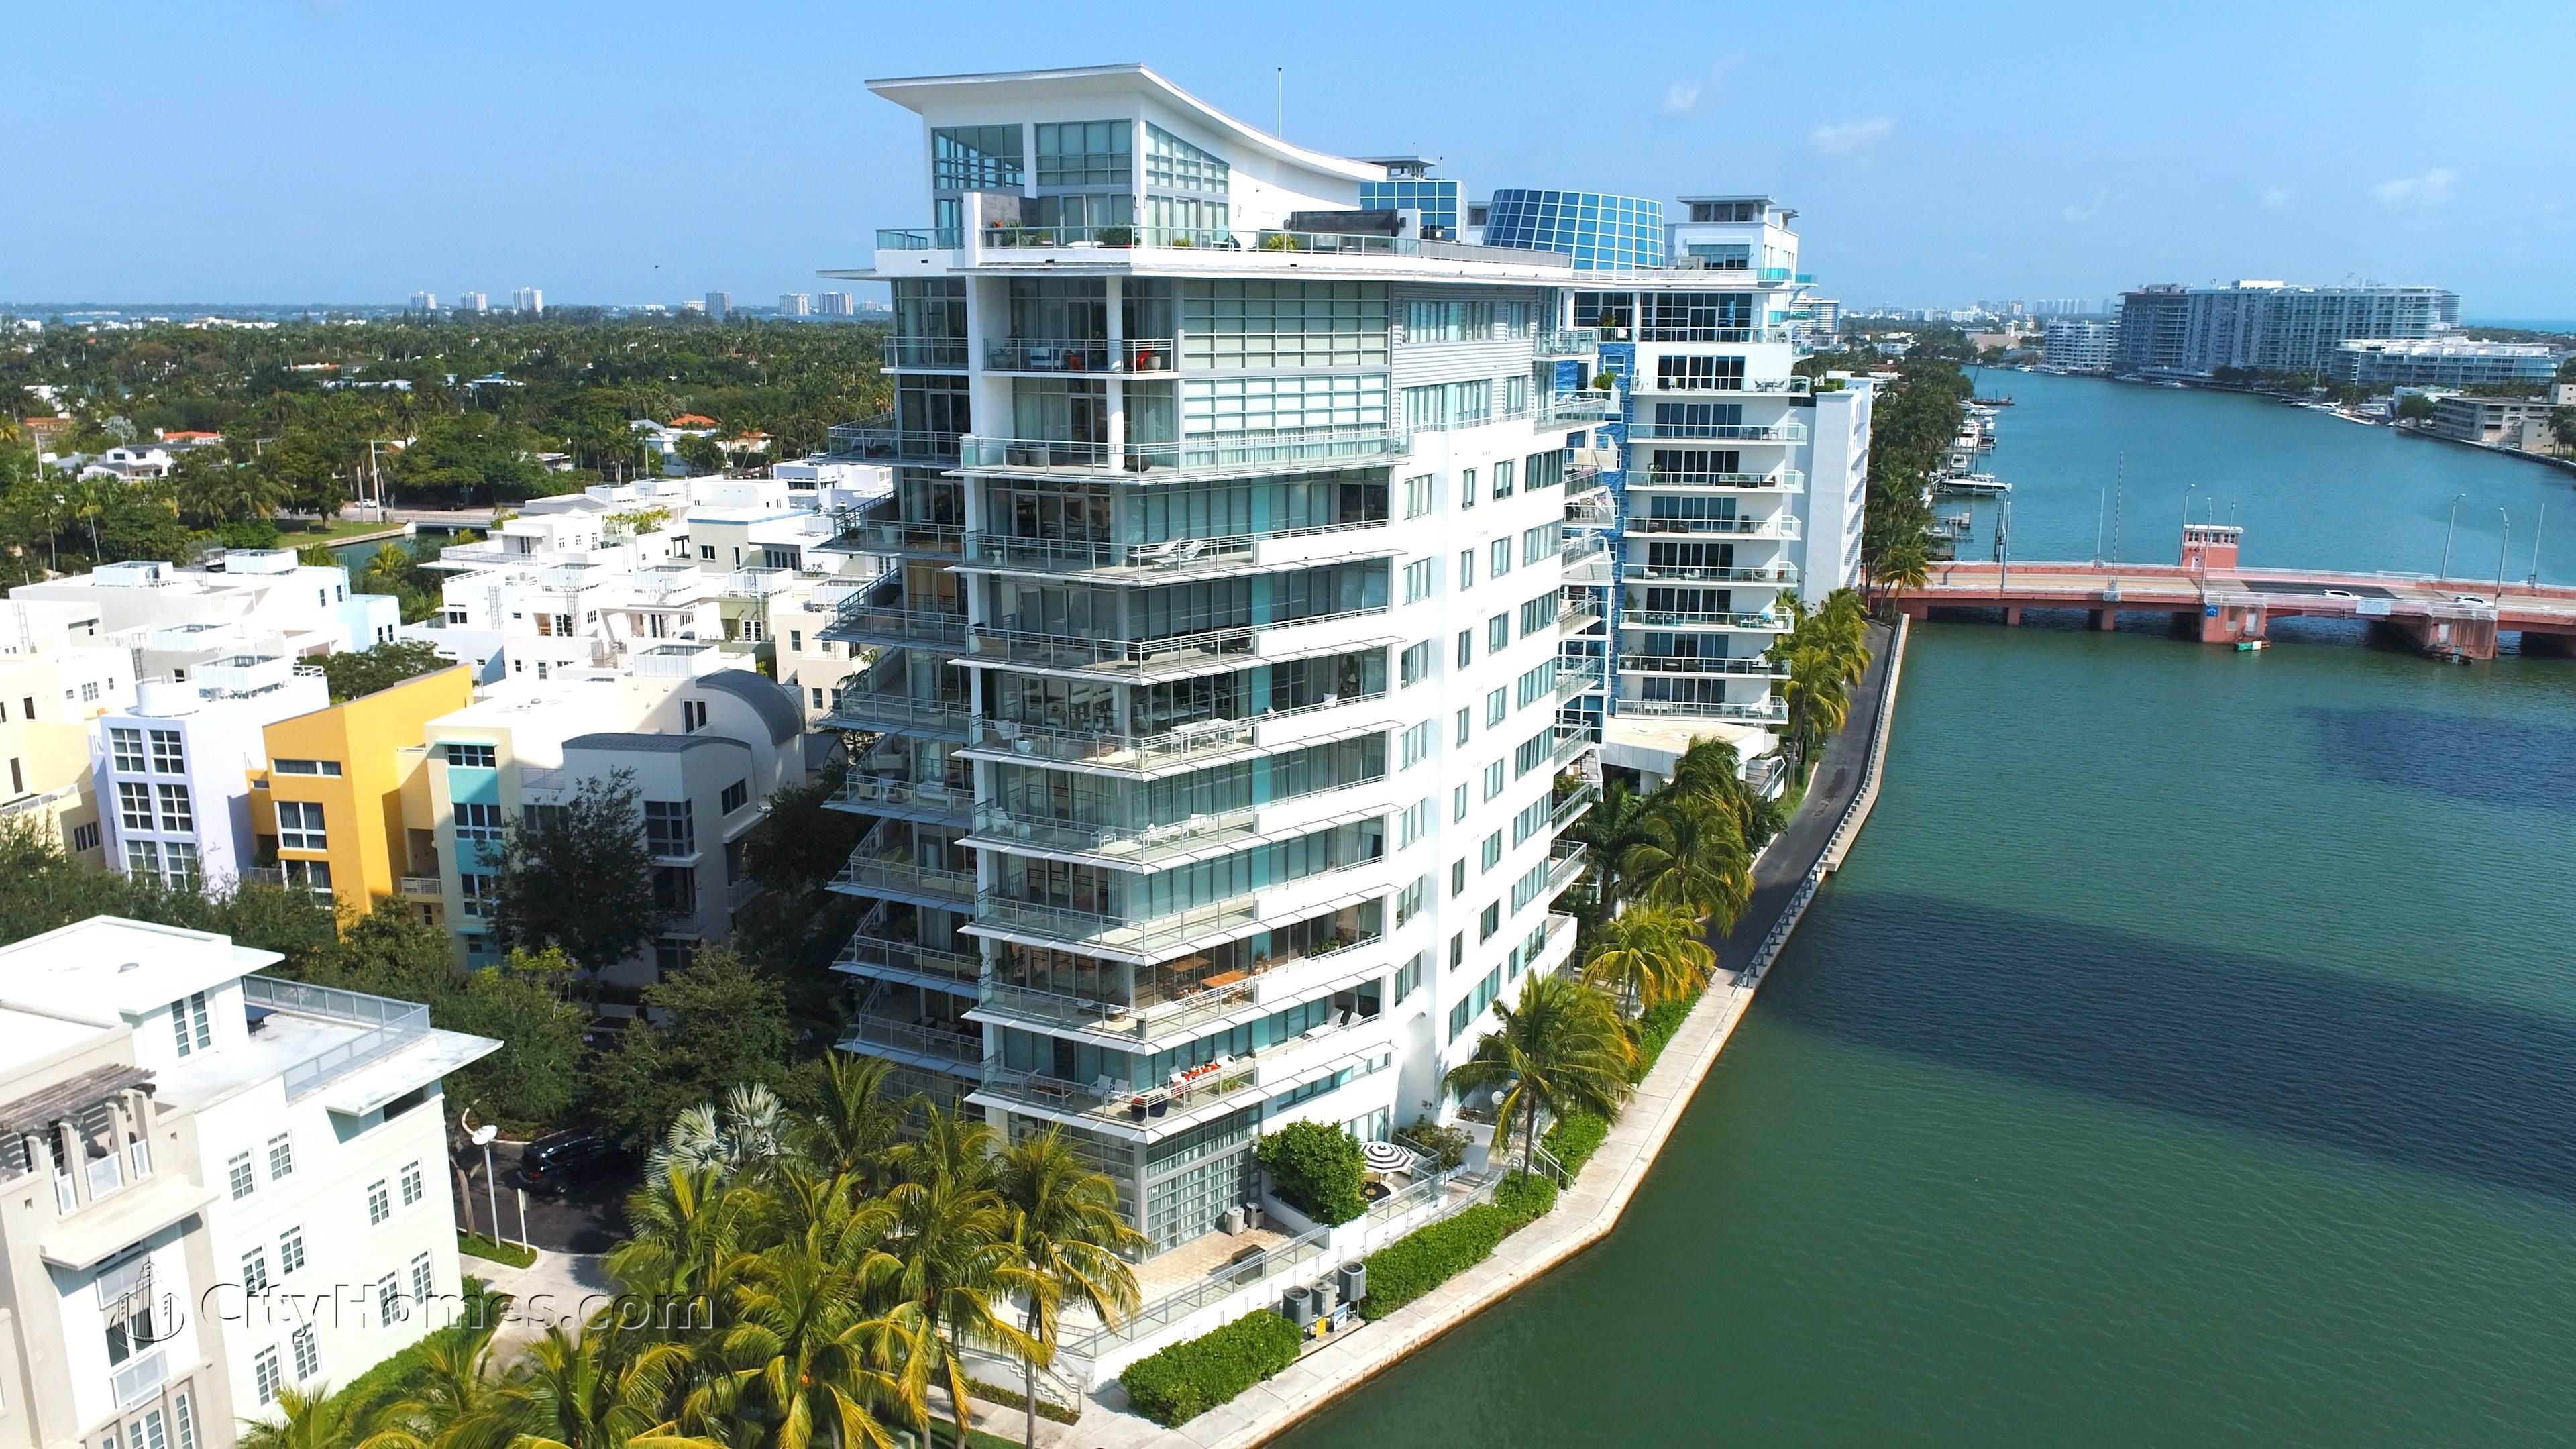 AQUA ALLISON ISLAND - GORLIN BUILDING建于 6101 Aqua Avenue, 迈阿密海滩, FL 33141